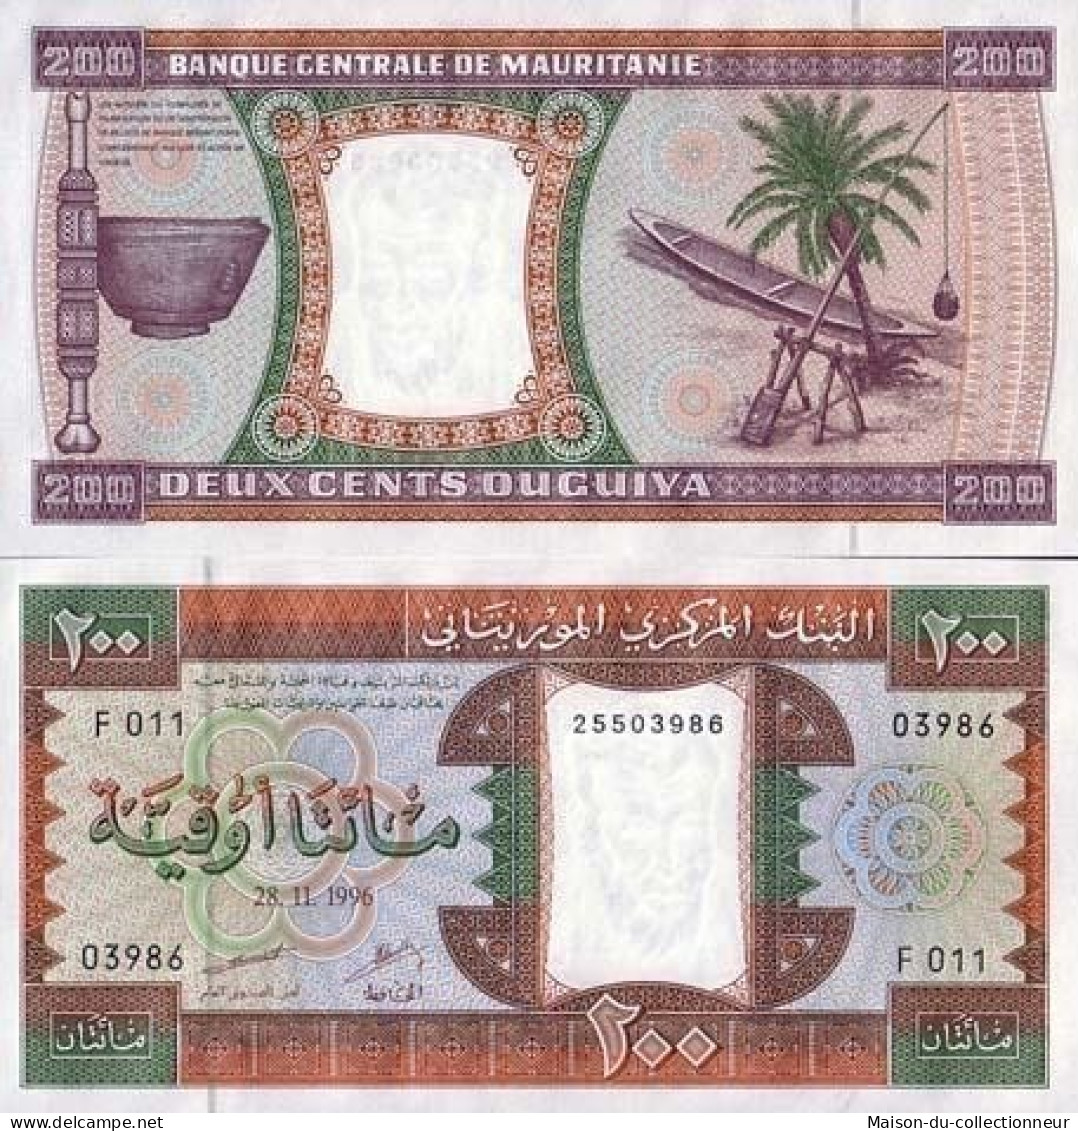 Billet De Banque Mauritanie Pk N° 5 - 200 Quguiya - Mauritania